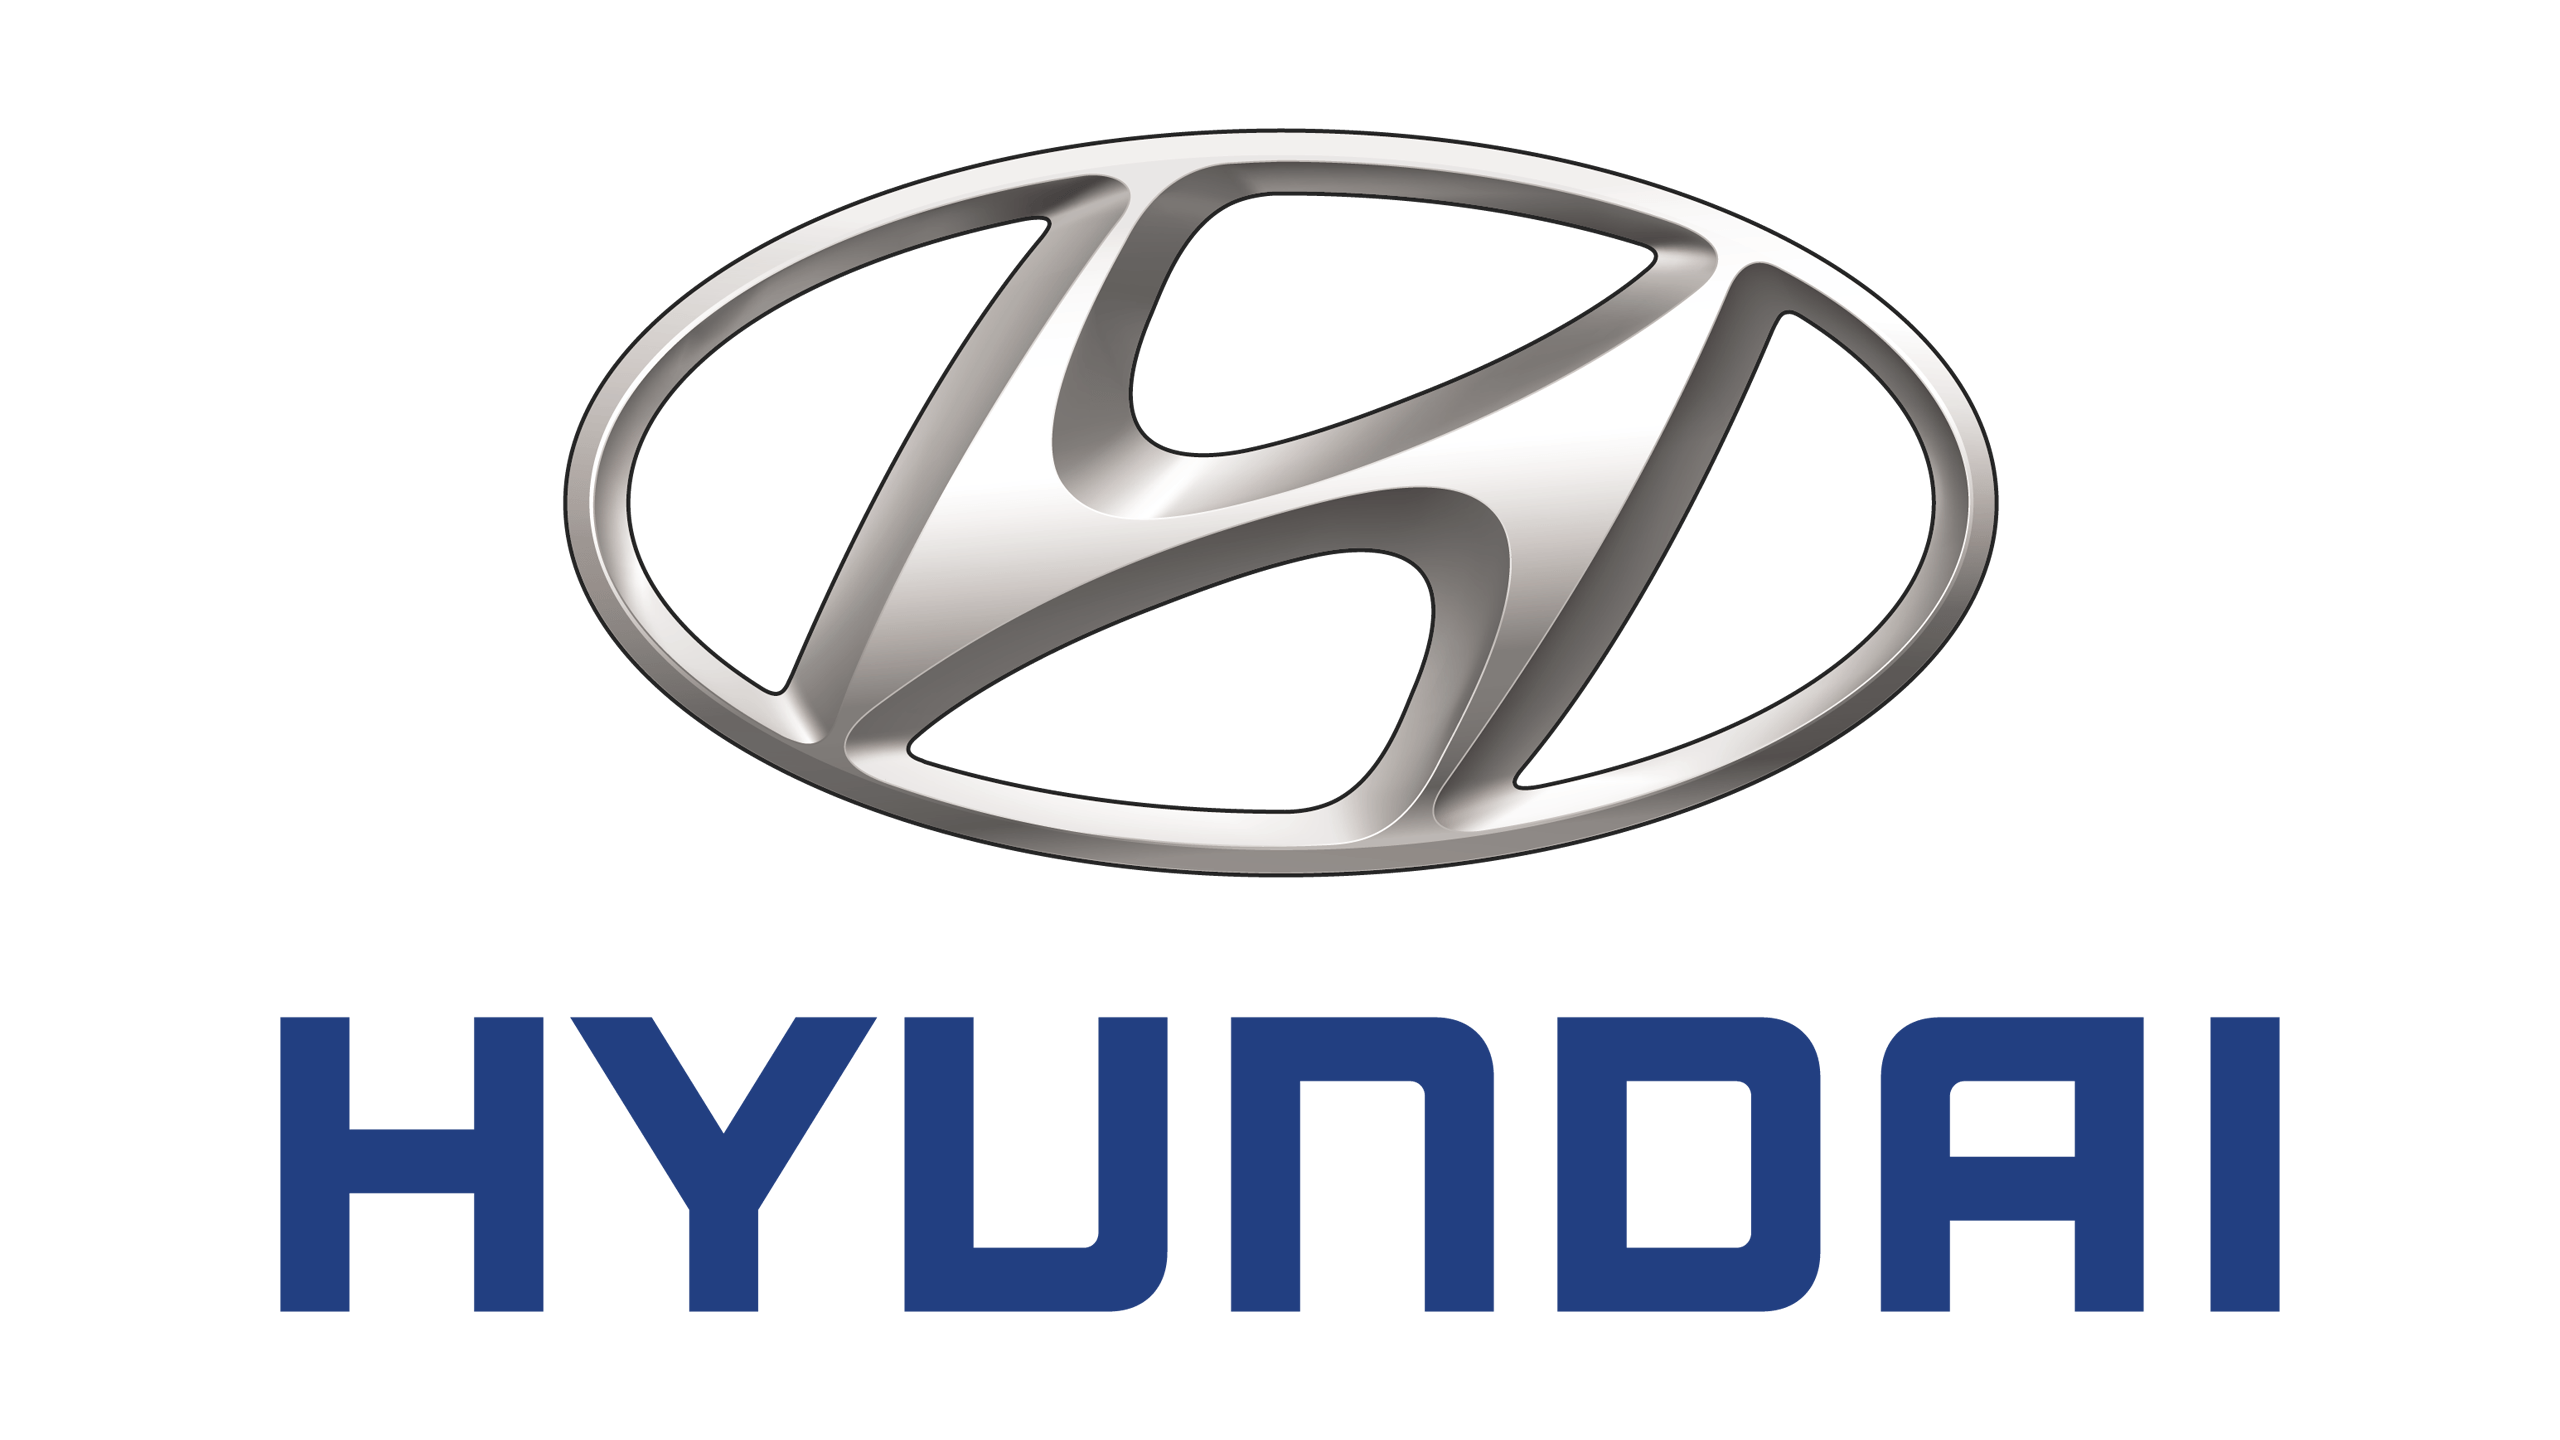 Genuine Hyundai Auto Spare Parts Dealer - Dubai